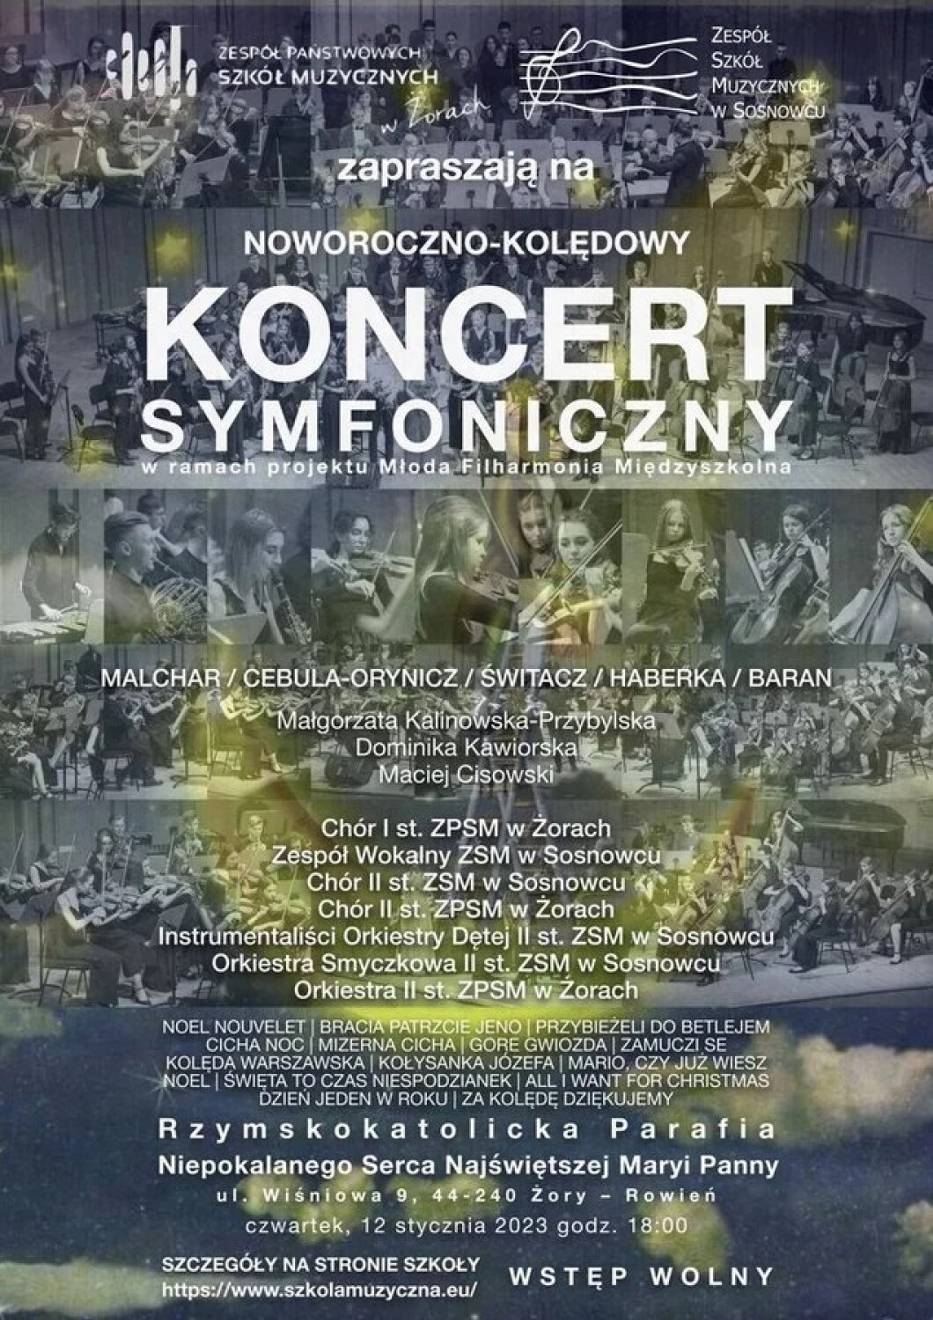 Wyjątkowy koncert symfoniczny już w styczniu w Żorach